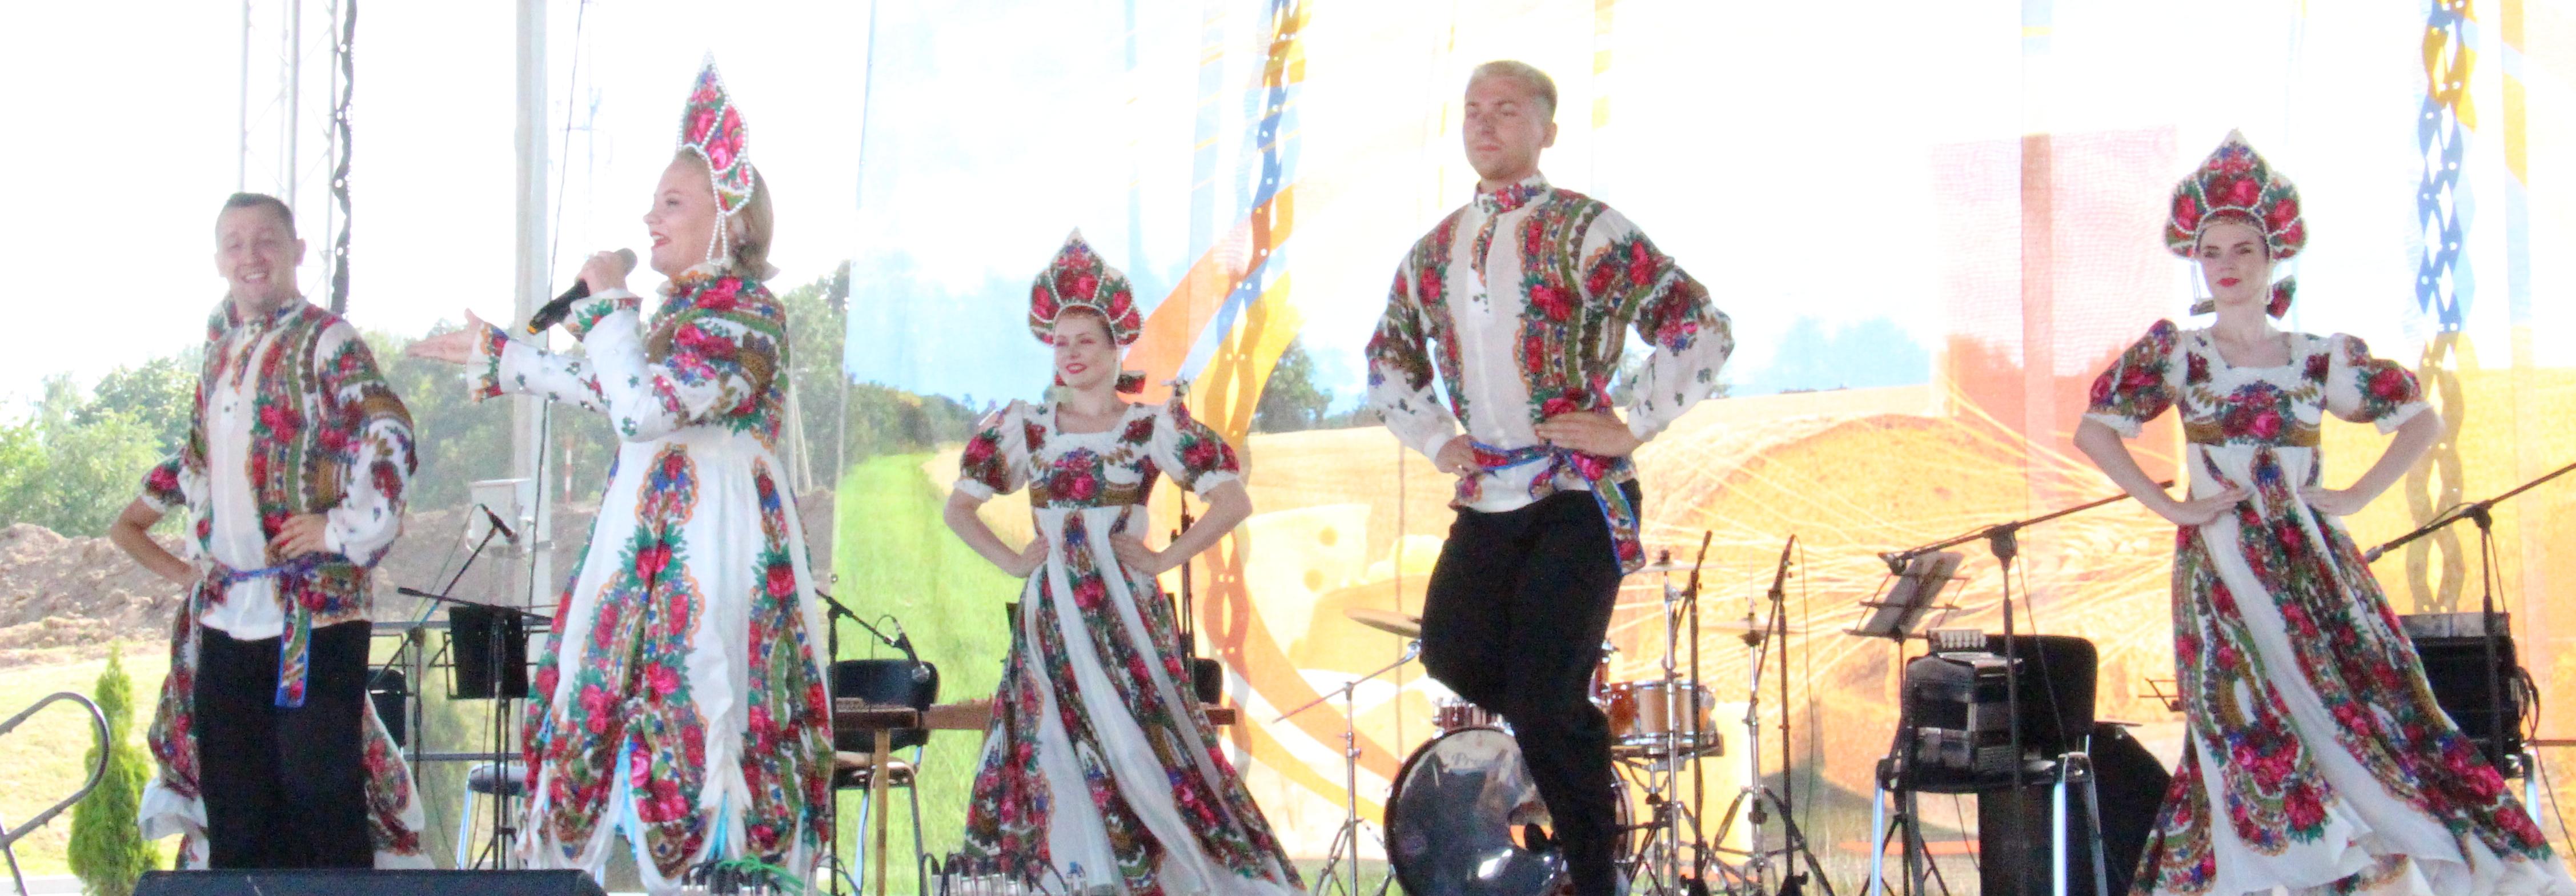 Гастрономический фестиваль, наполненный ароматом душистого хлеба, выдержанного сыра и ароматного кваса, прошел в Новогрудке